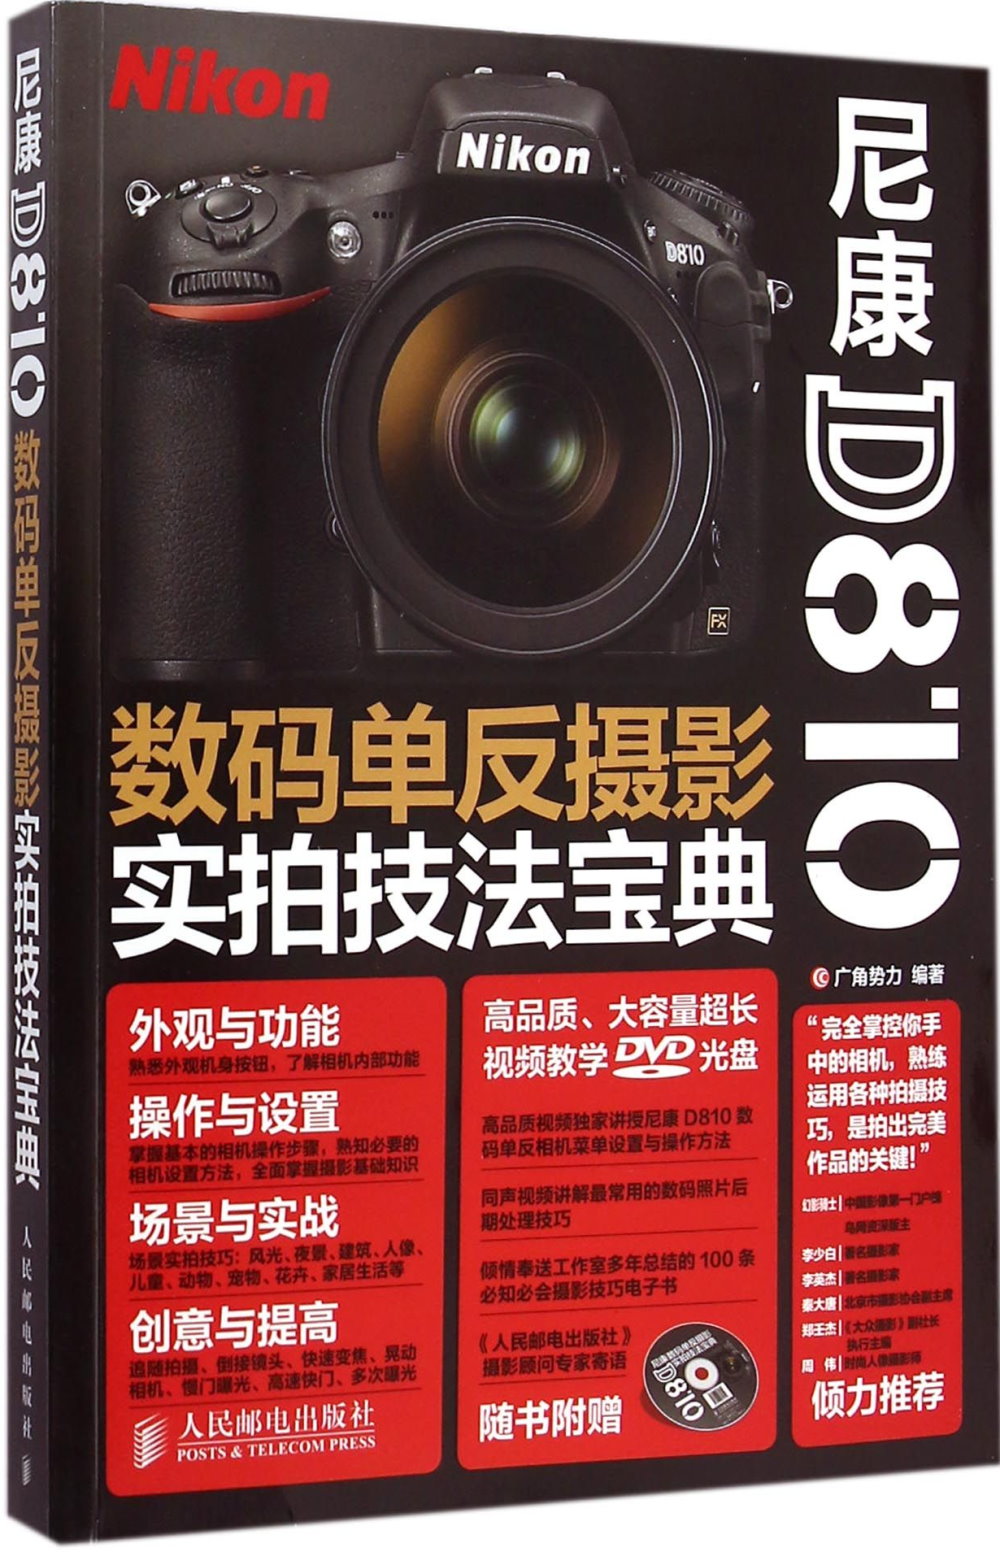 尼康D810數碼單反攝影實拍技法寶典